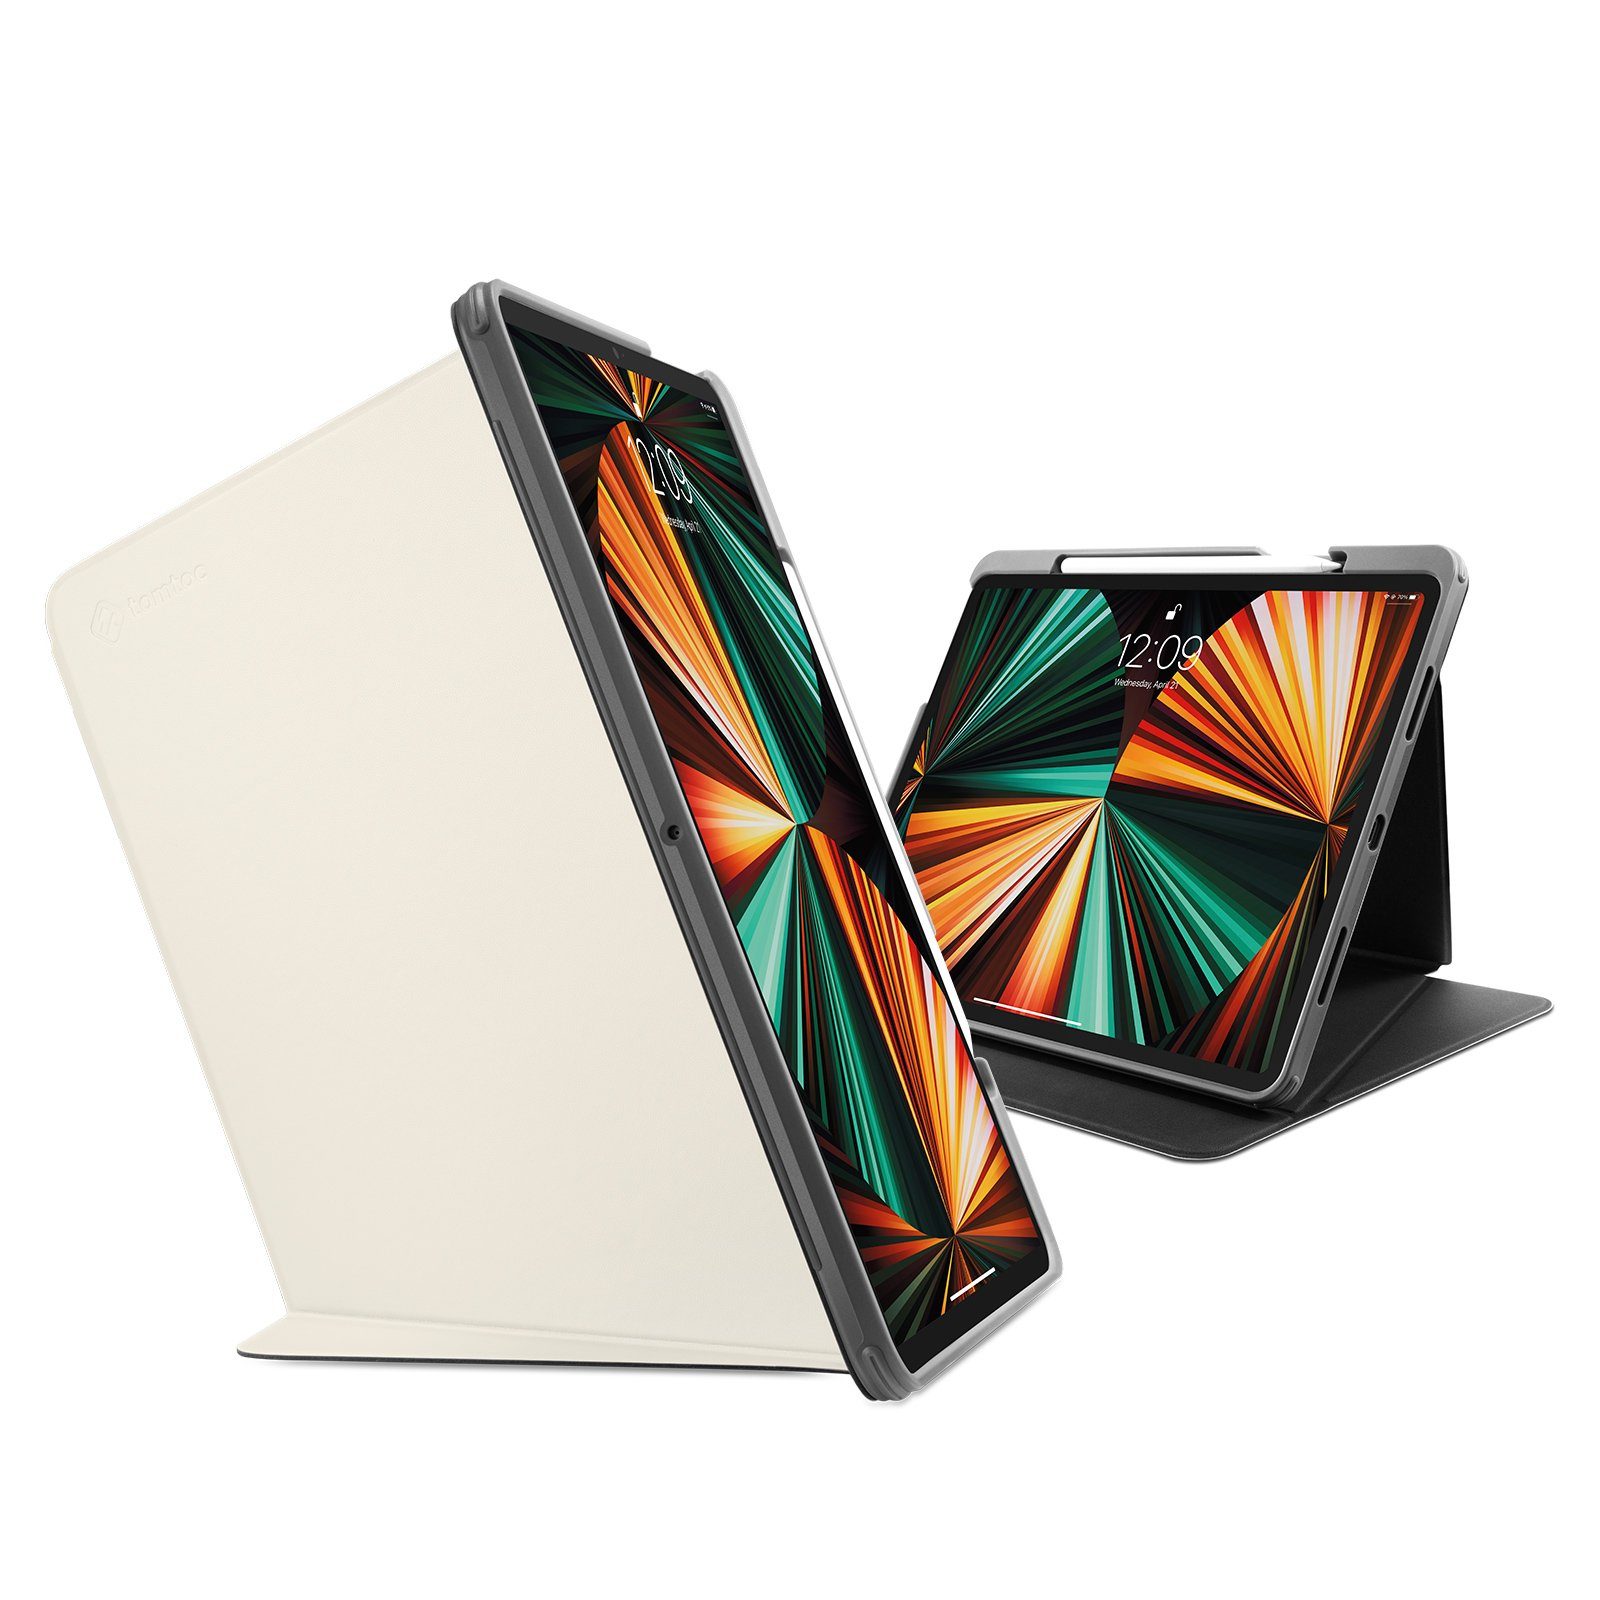 tomtoc Tablet-Hülle 12,9 Zoll iPad Pro (5. Generation) Hülle, mit  Vertikal/Horizontal Standpositionen, Stifthalter, Auto Sleep/Wake Funktion